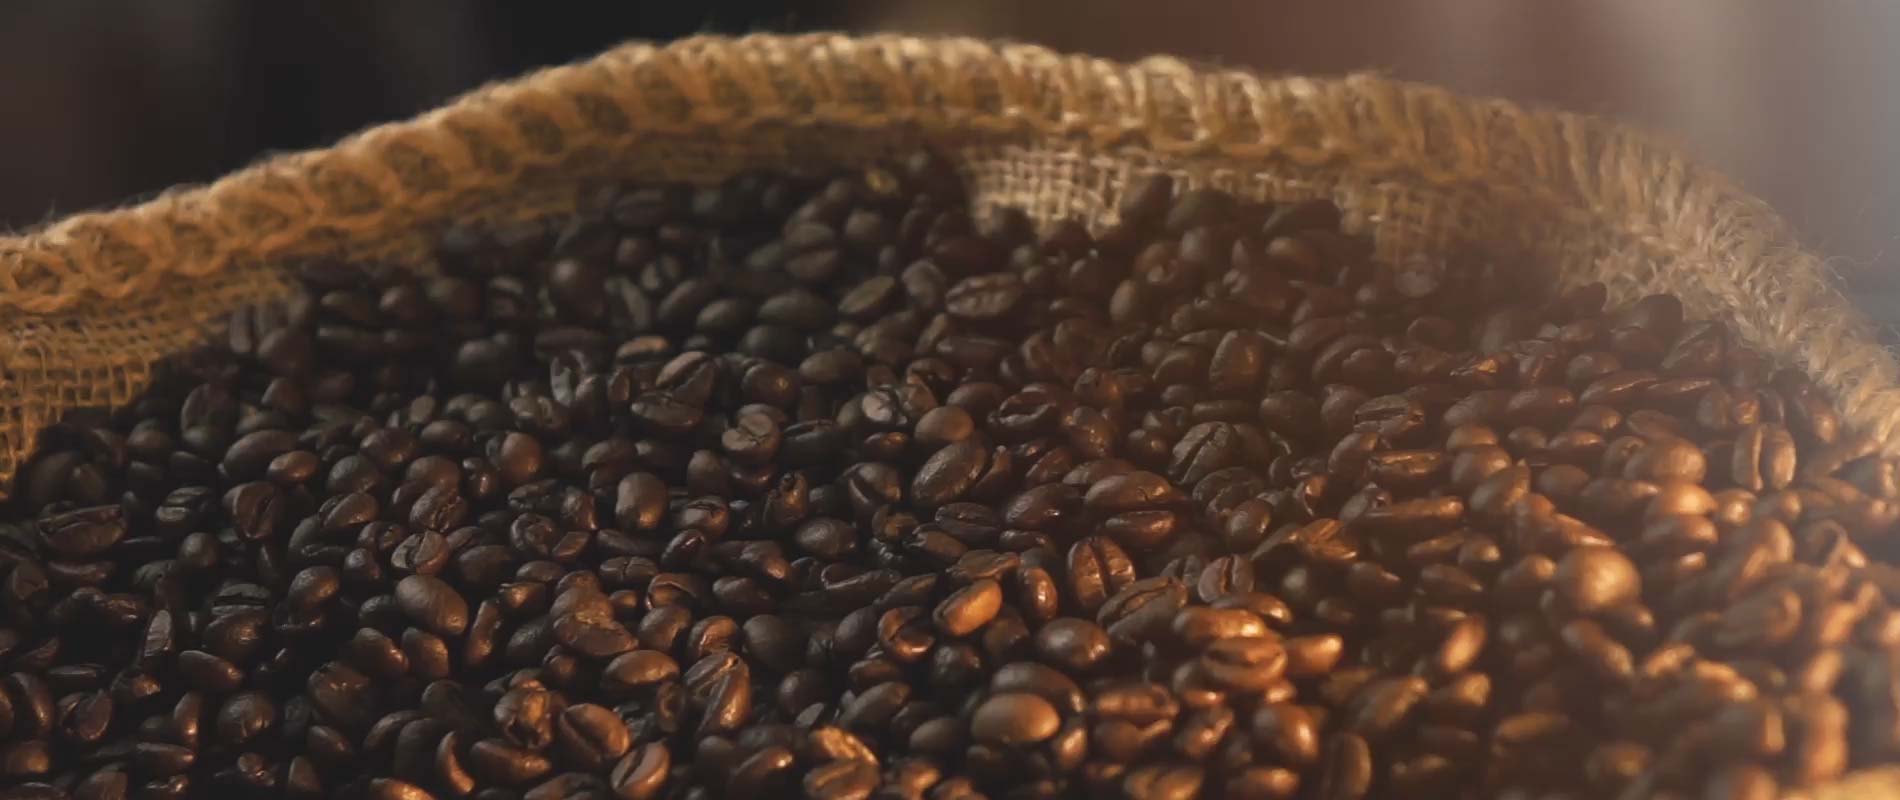 fresh coffee beans in a wicker basket